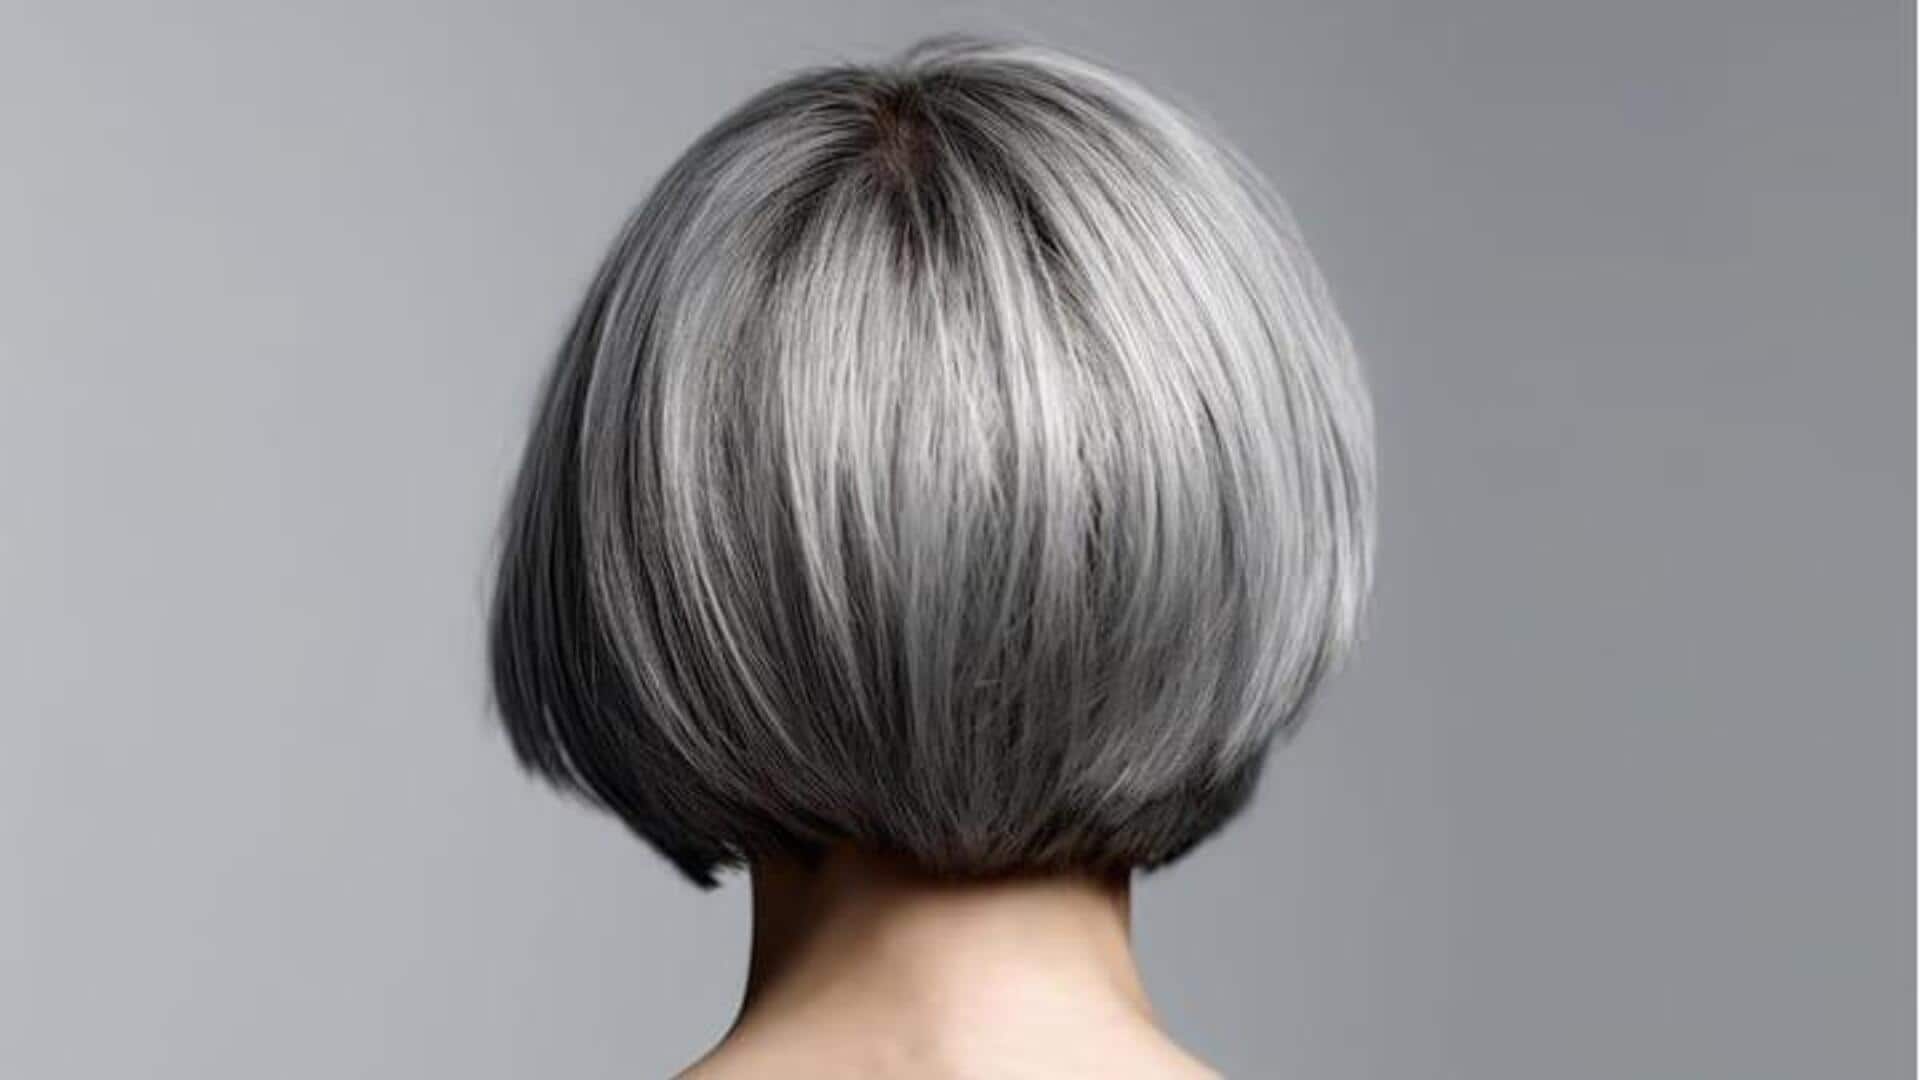 Shampo Biru: Mengungkap Rahasia Rambut Kuat Yang Sempurna